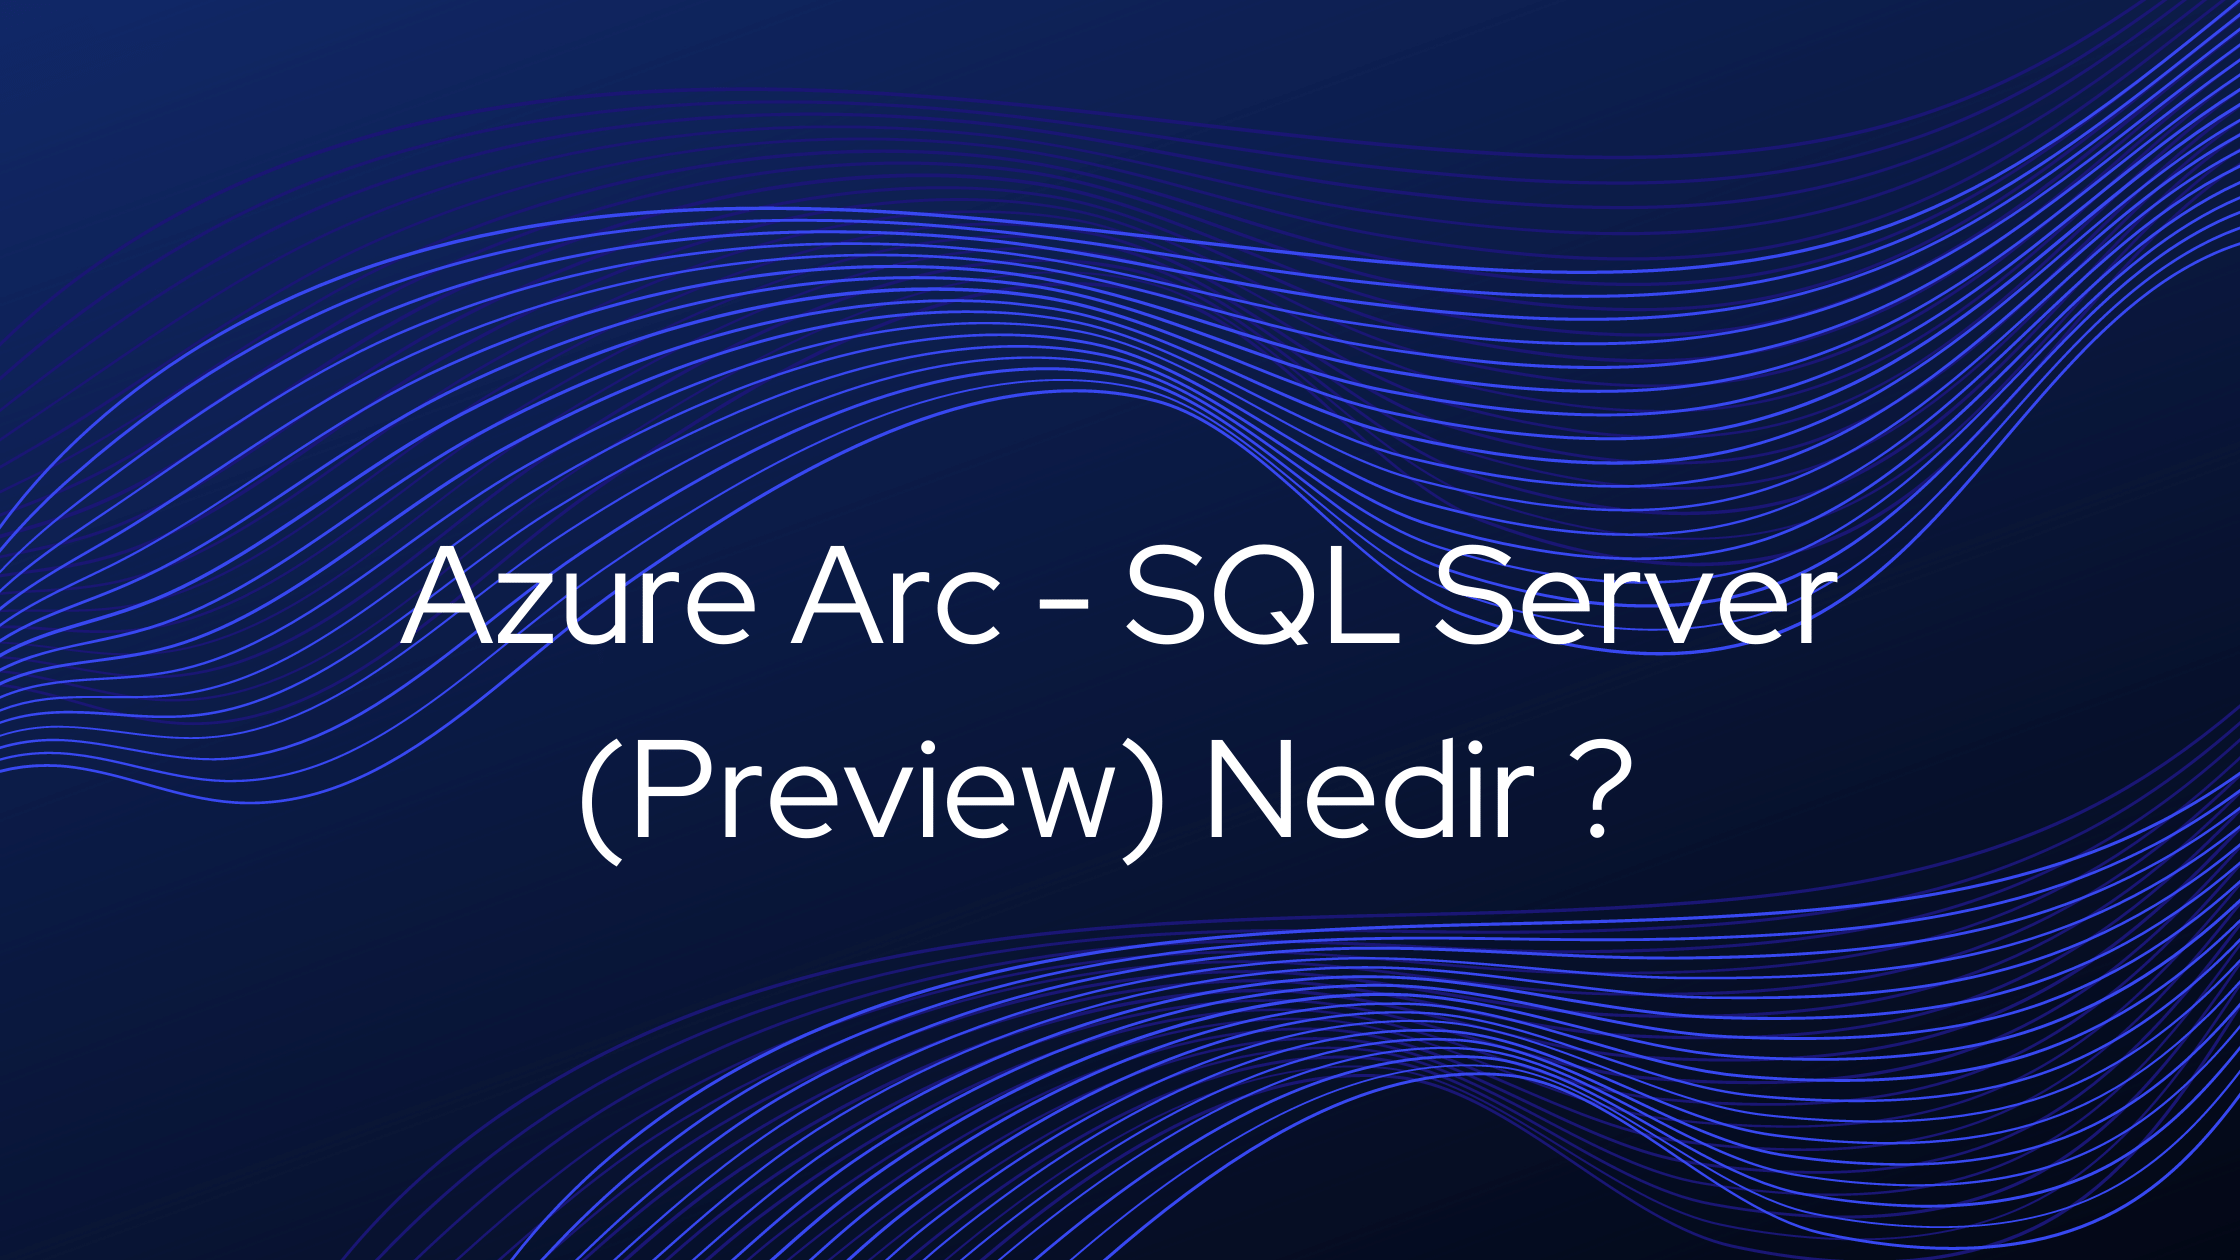 Azure Arc - SQL Server Preview